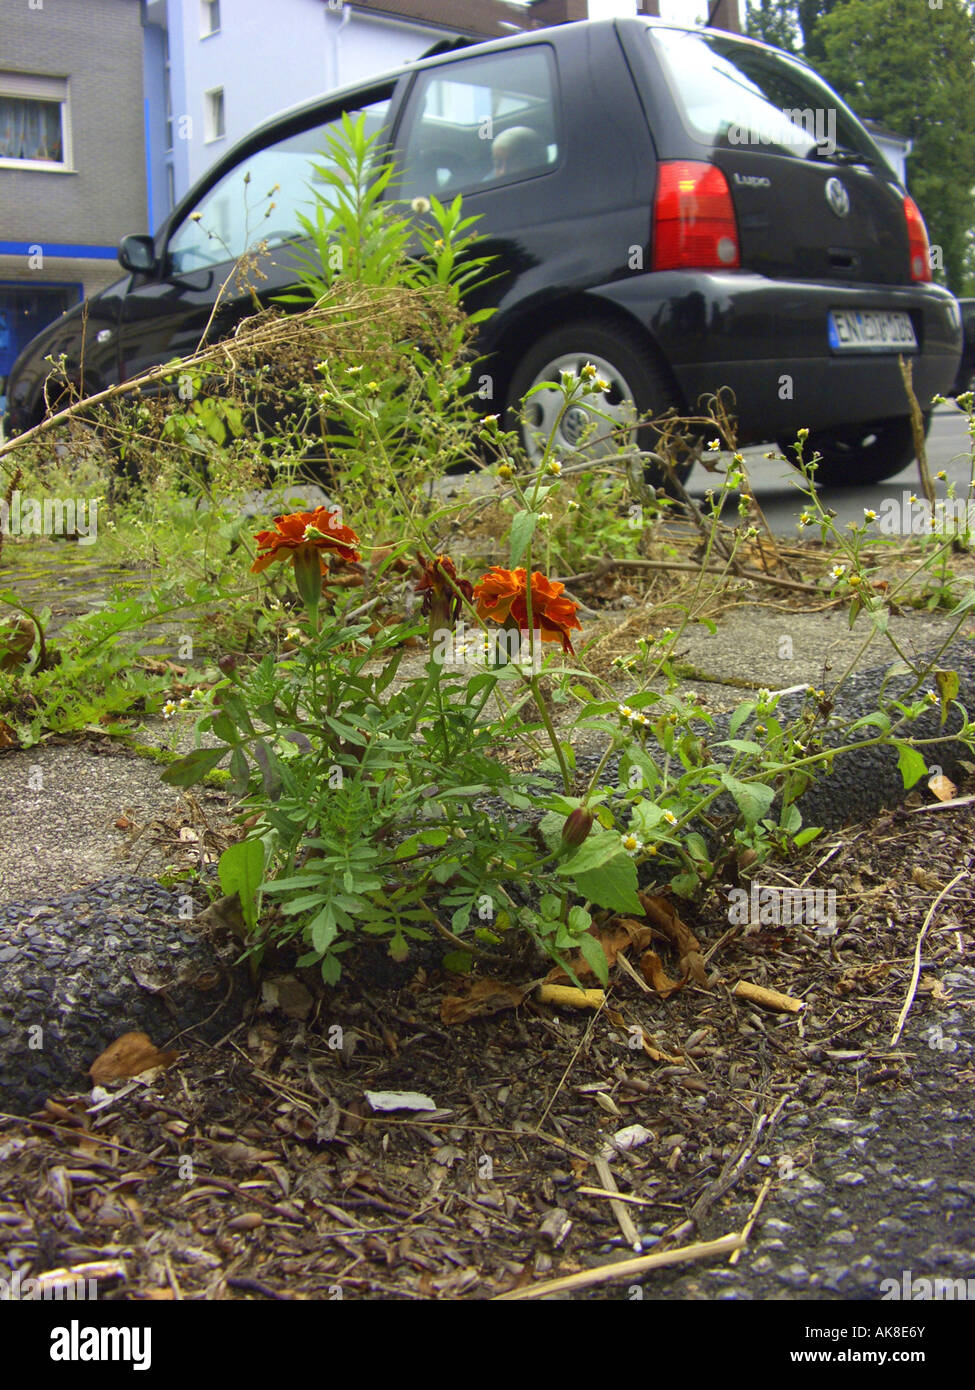 French marigold (Tagetes patula), naturalized on a pavement, Germany Stock Photo